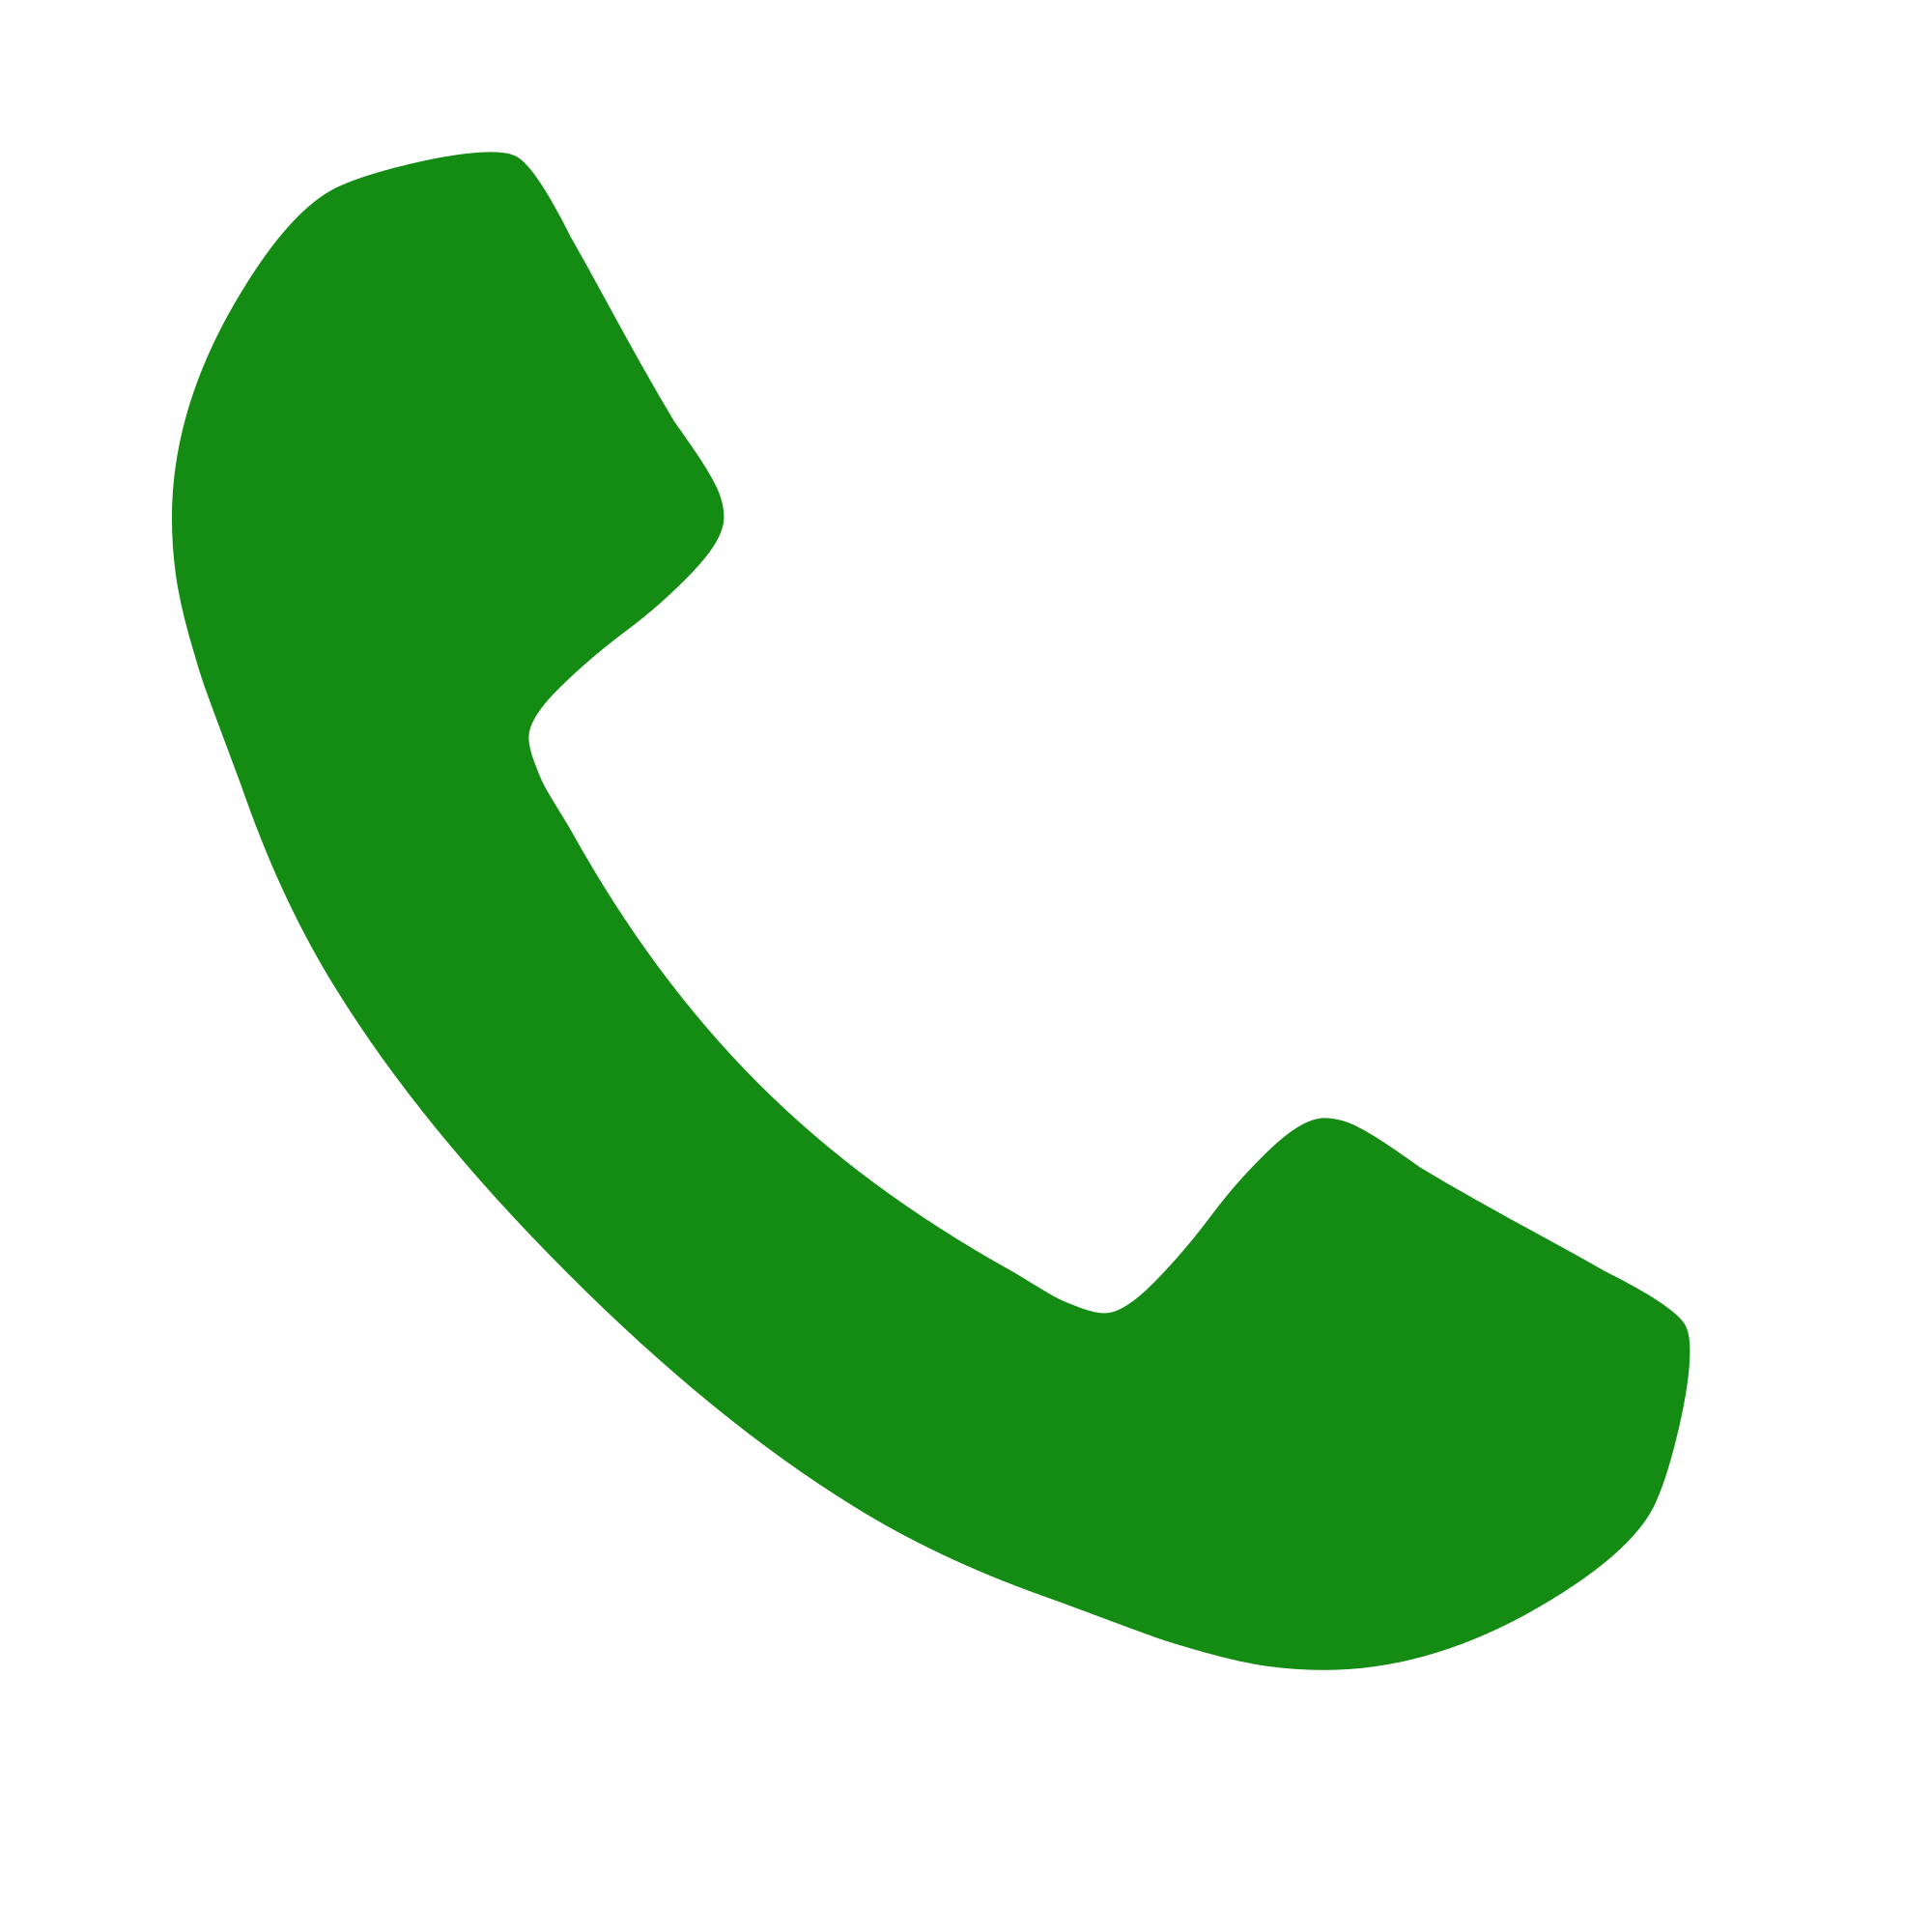 Telephone clipart green phone, Telephone green phone